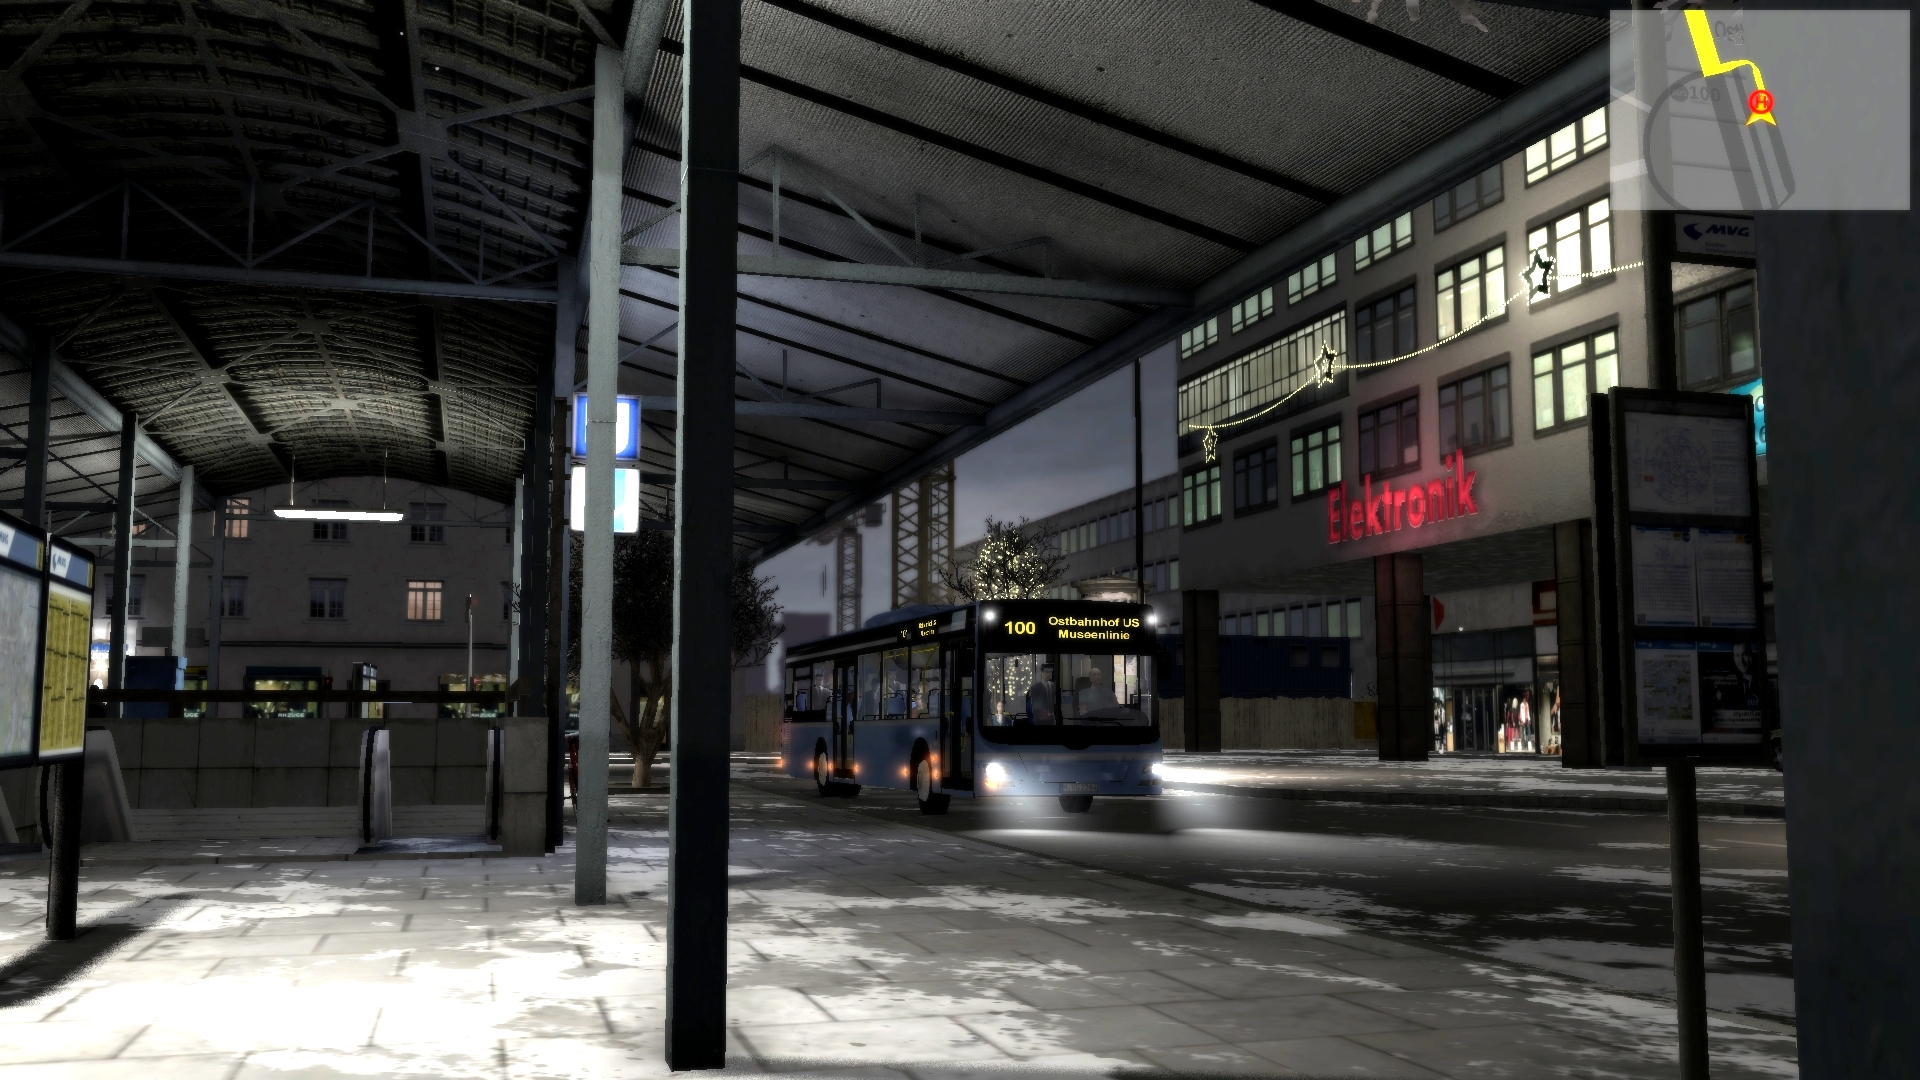 new york city bus simulator 2010 download full free